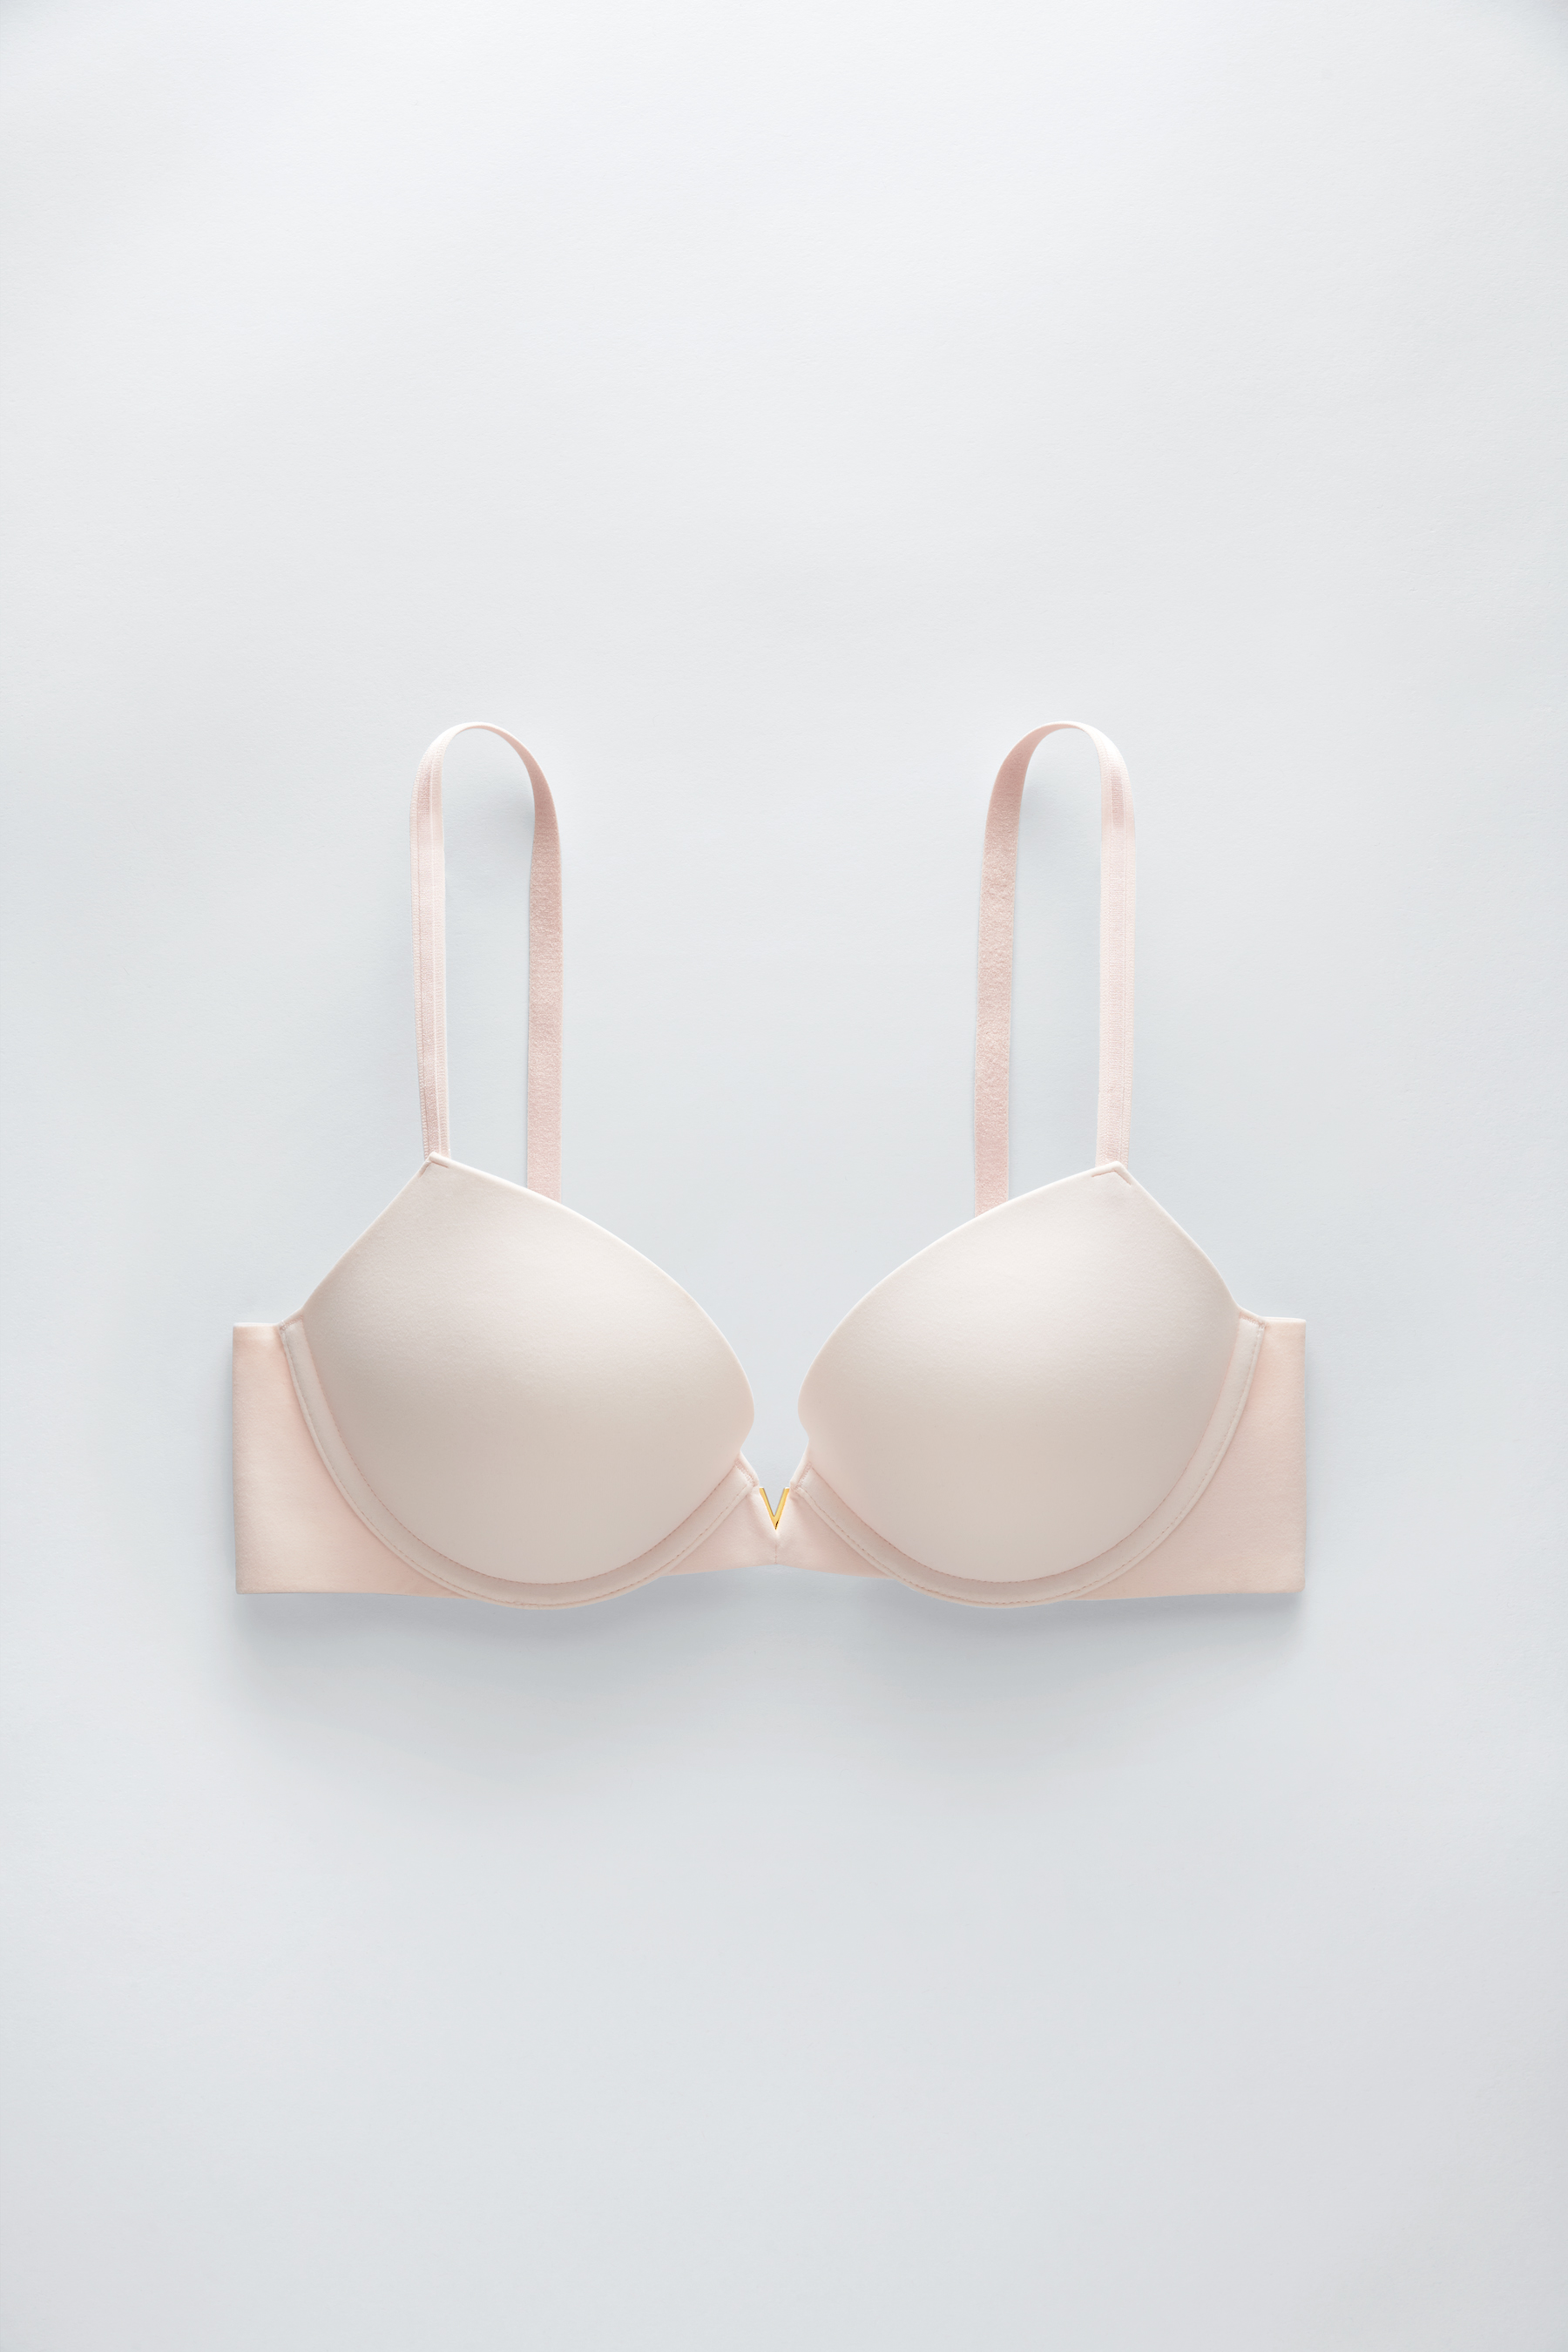 21-31 Jul 2022: Victoria's Secret Love Cloud Collection bras